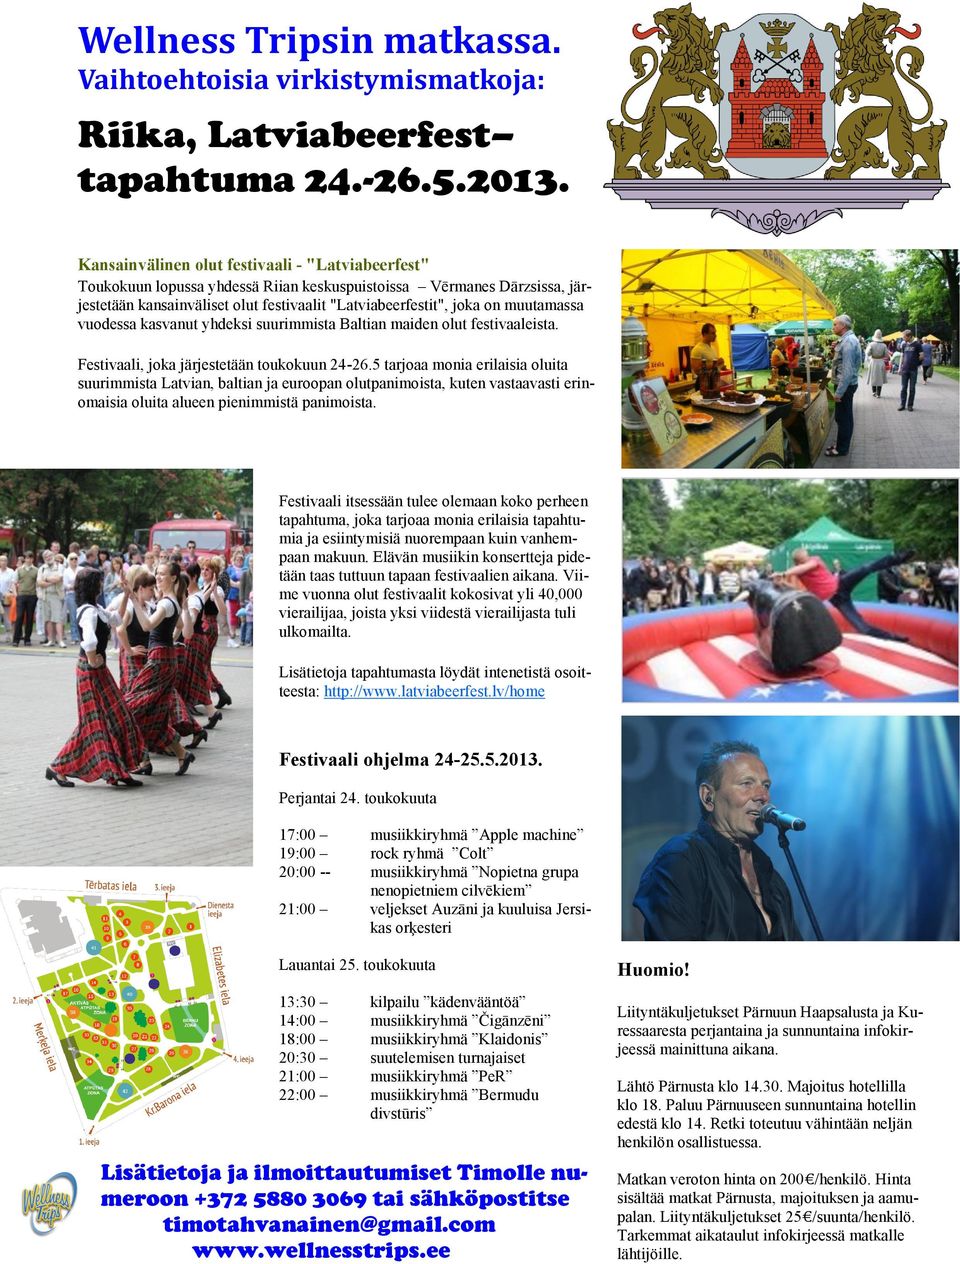 muutamassa vuodessa kasvanut yhdeksi suurimmista Baltian maiden olut festivaaleista. Festivaali, joka järjestetään toukokuun 24-26.